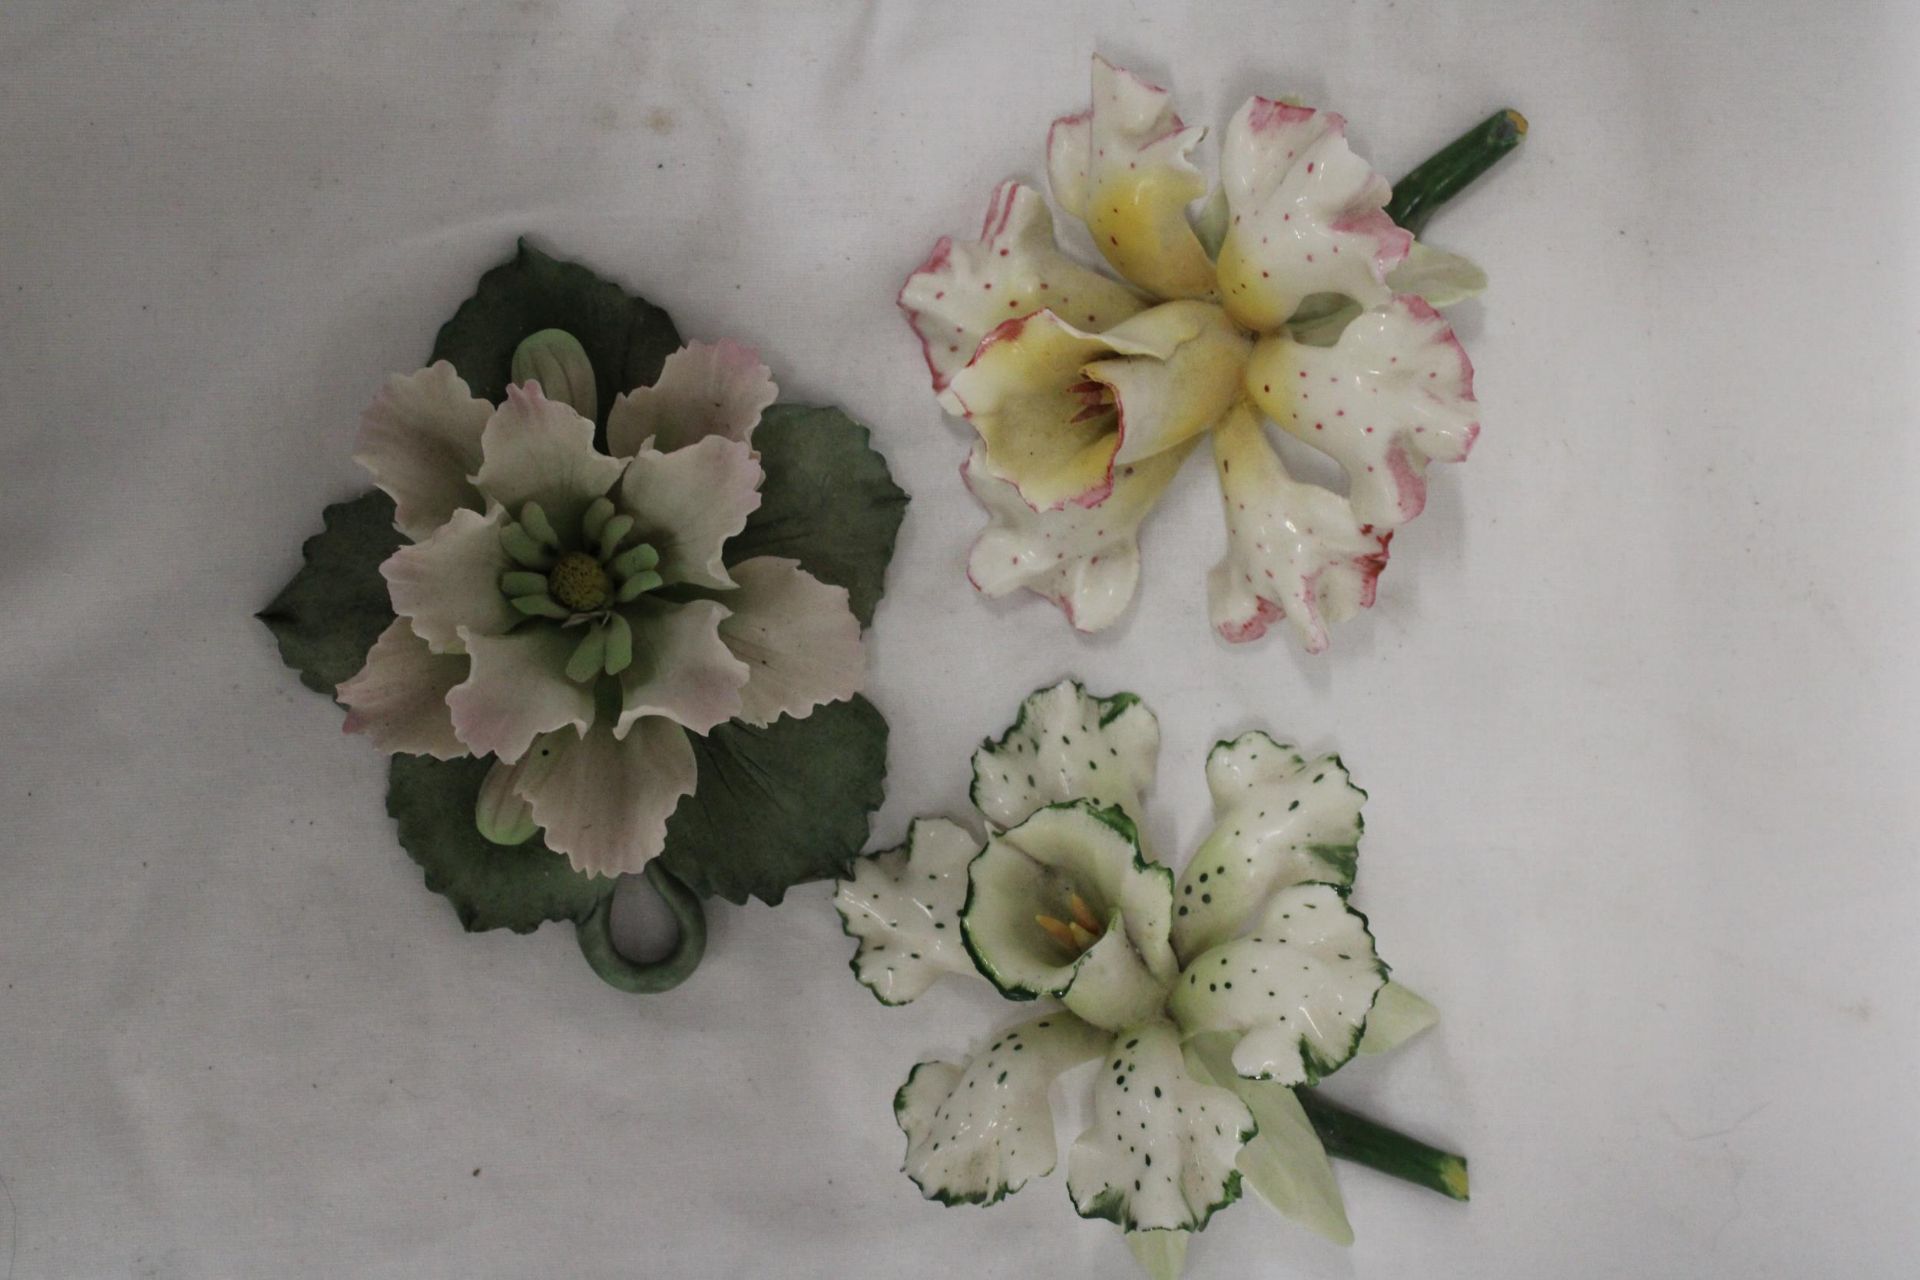 THREE DELICATE CERAMIC FLOWERS - Image 2 of 5